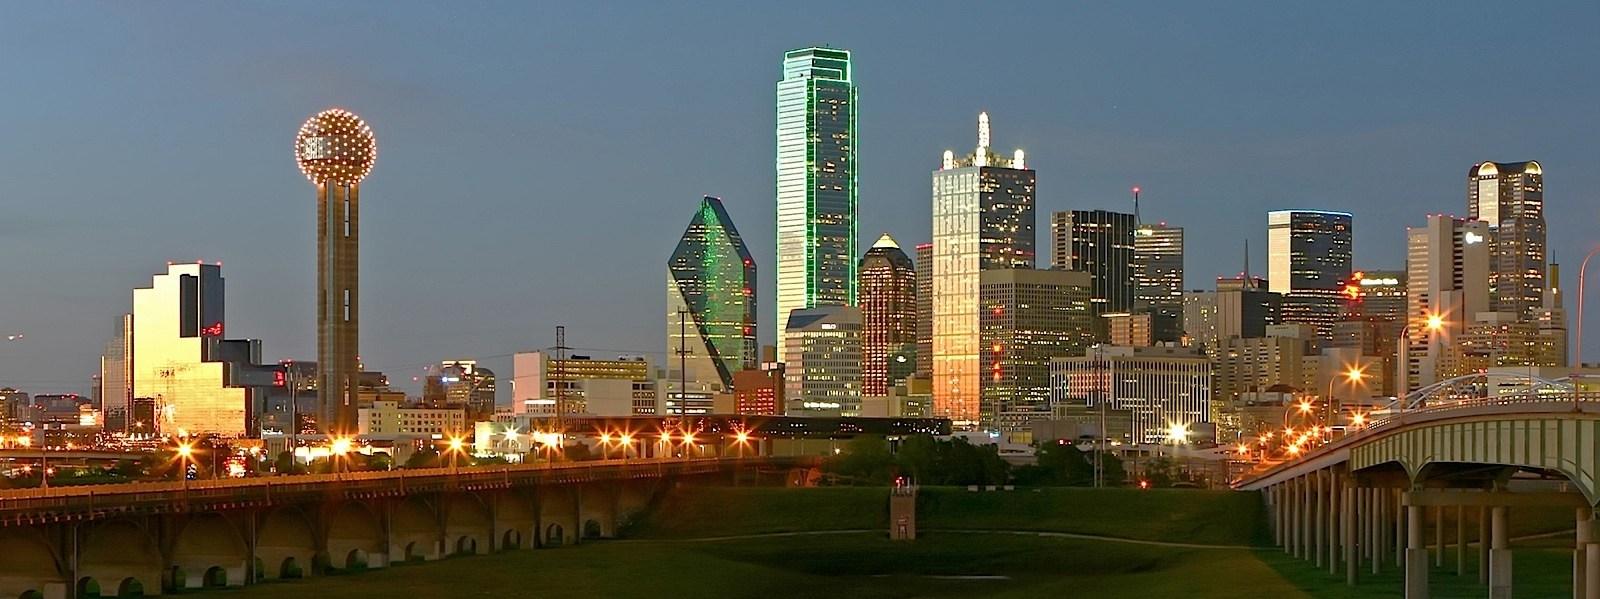 10 2015 Dallas, City Image Galleries